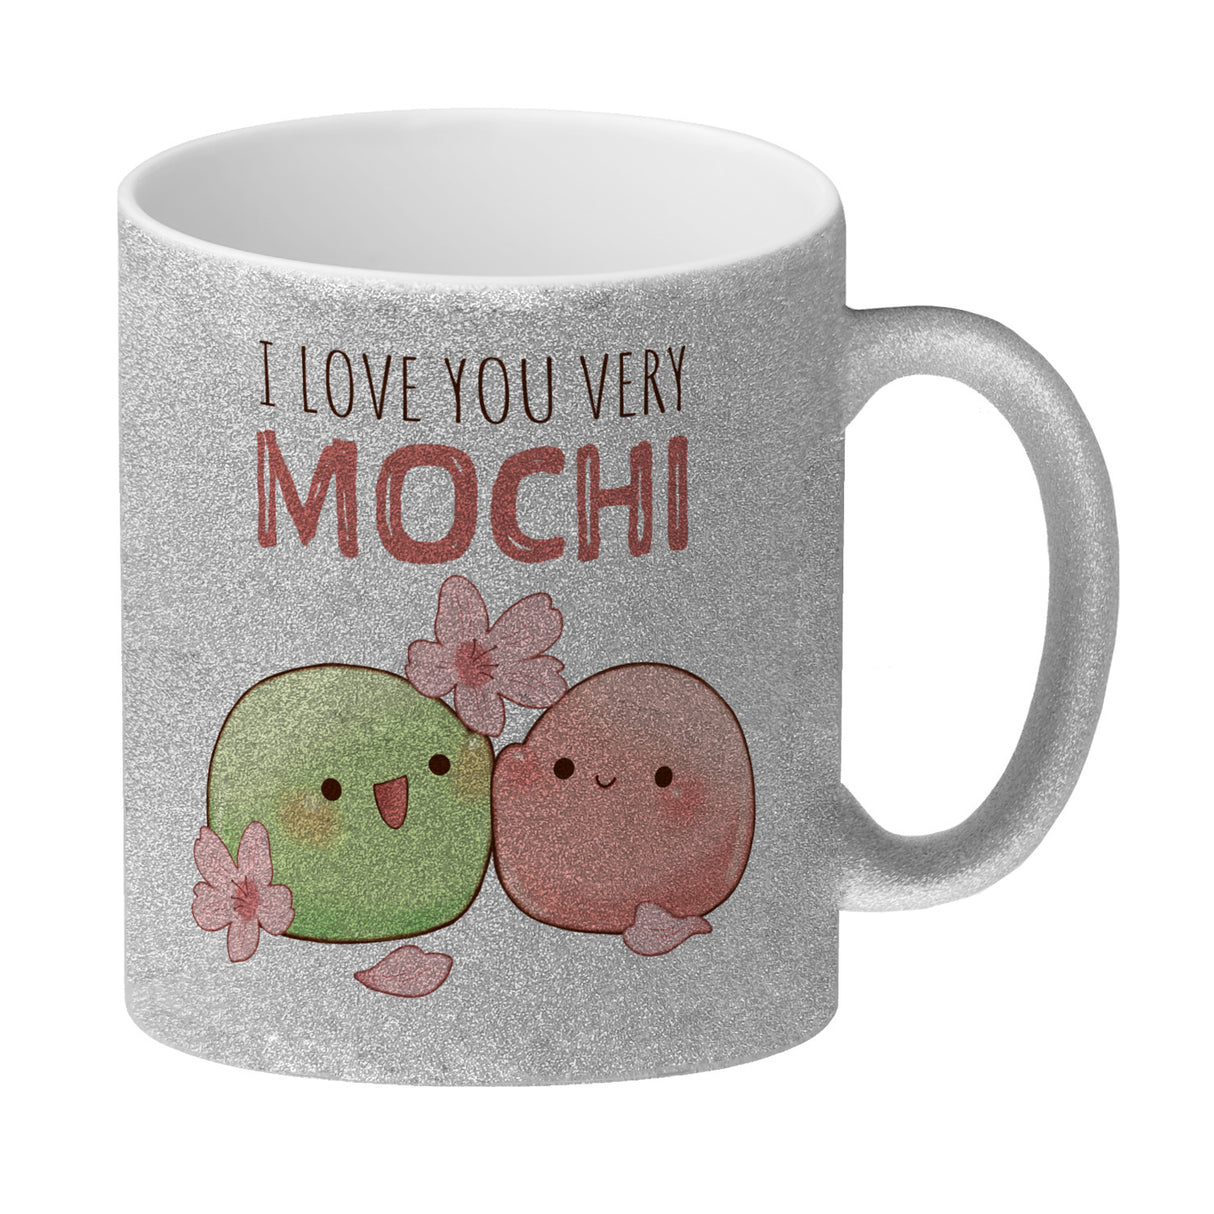 Mochi Paar Kaffeebecher mit Spruch I love you very Mochi